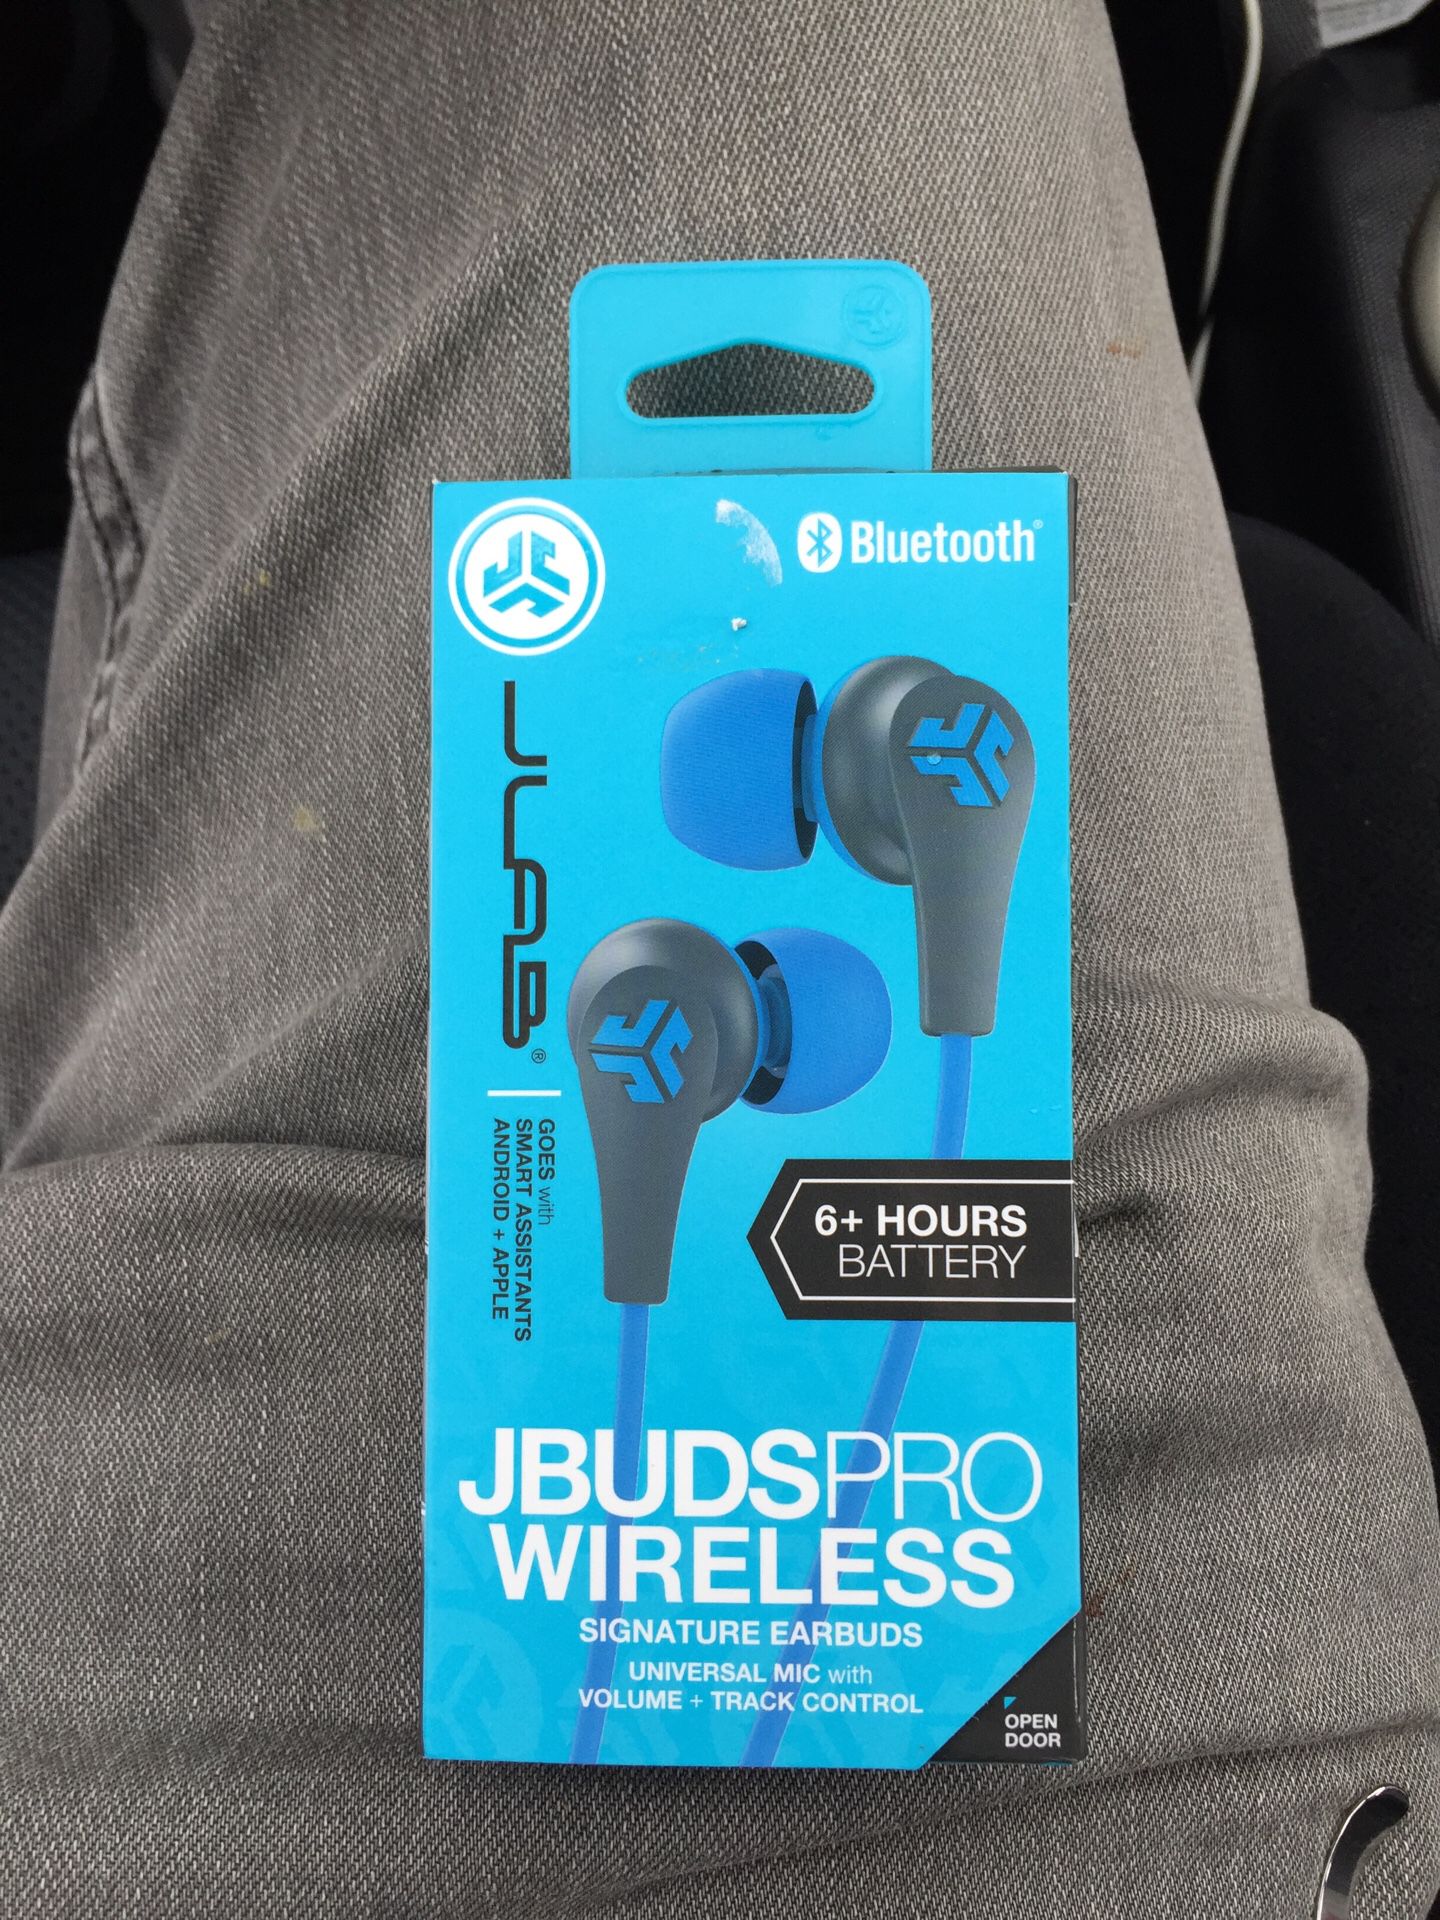 Jbuds wireless earbuds